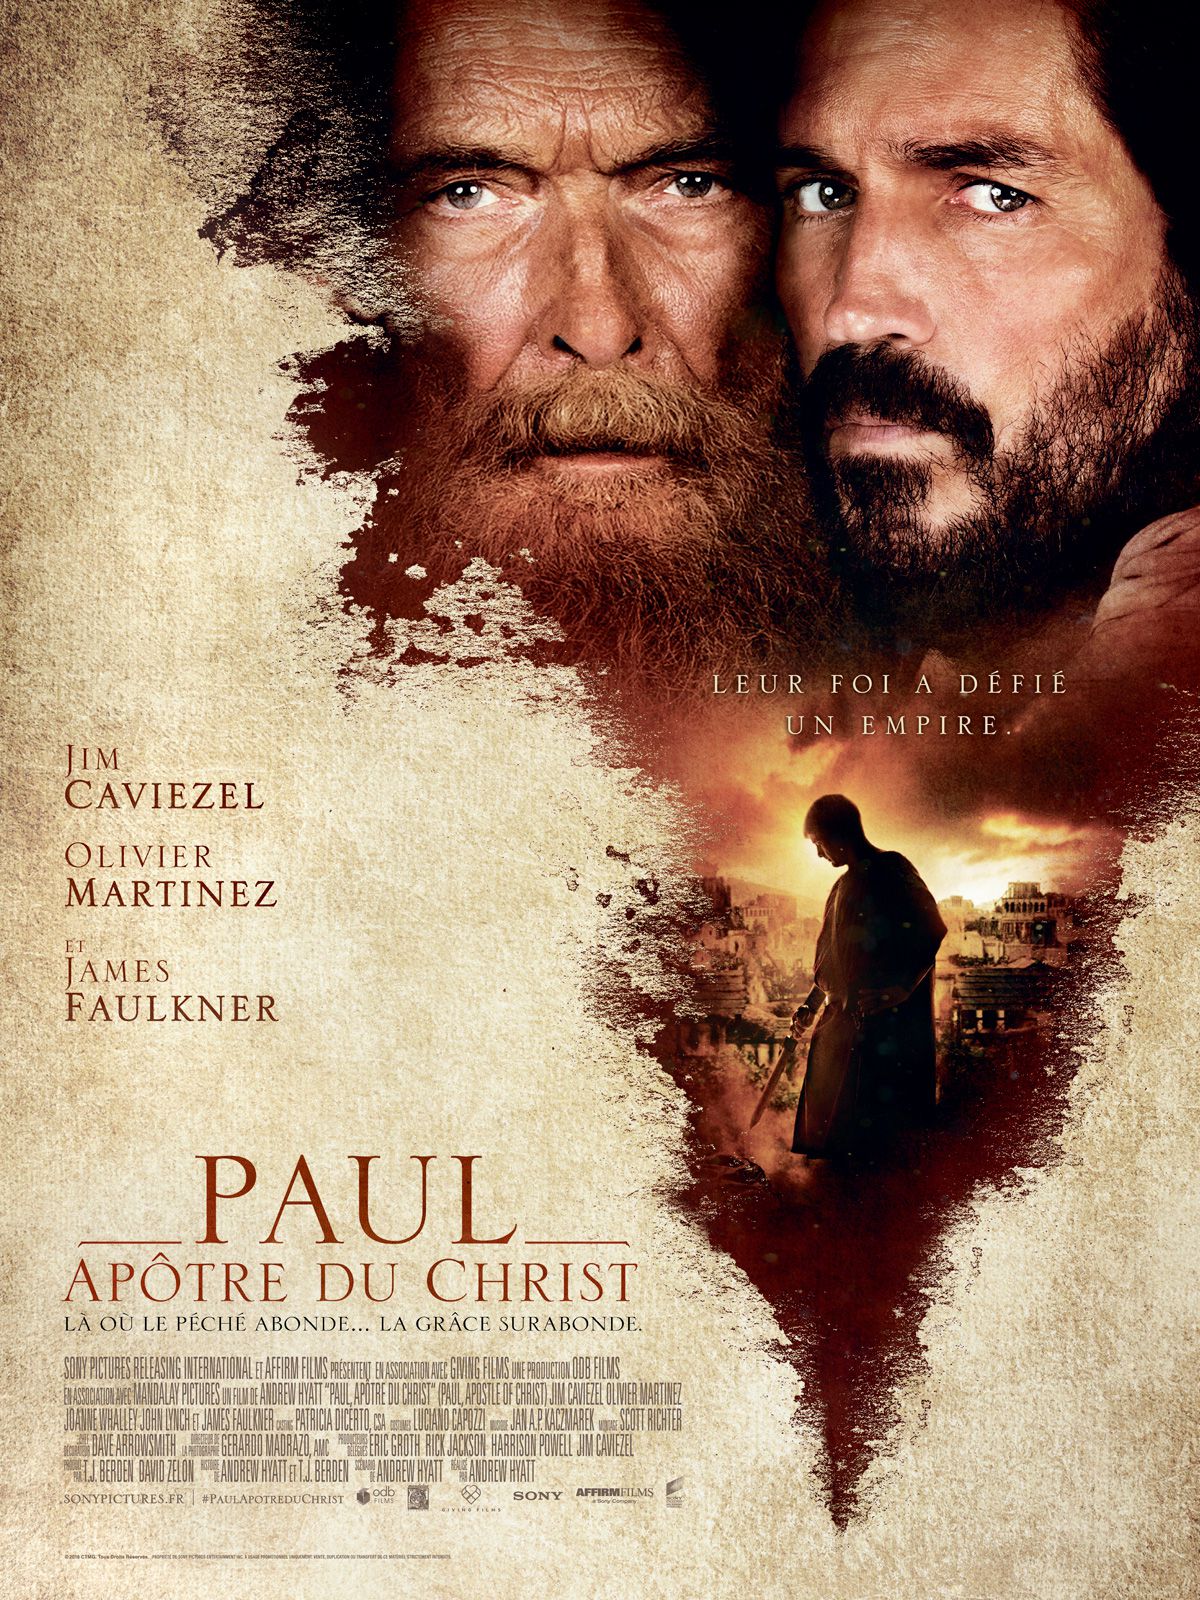 Paul, apôtre du Christ - Film (2018) streaming VF gratuit complet